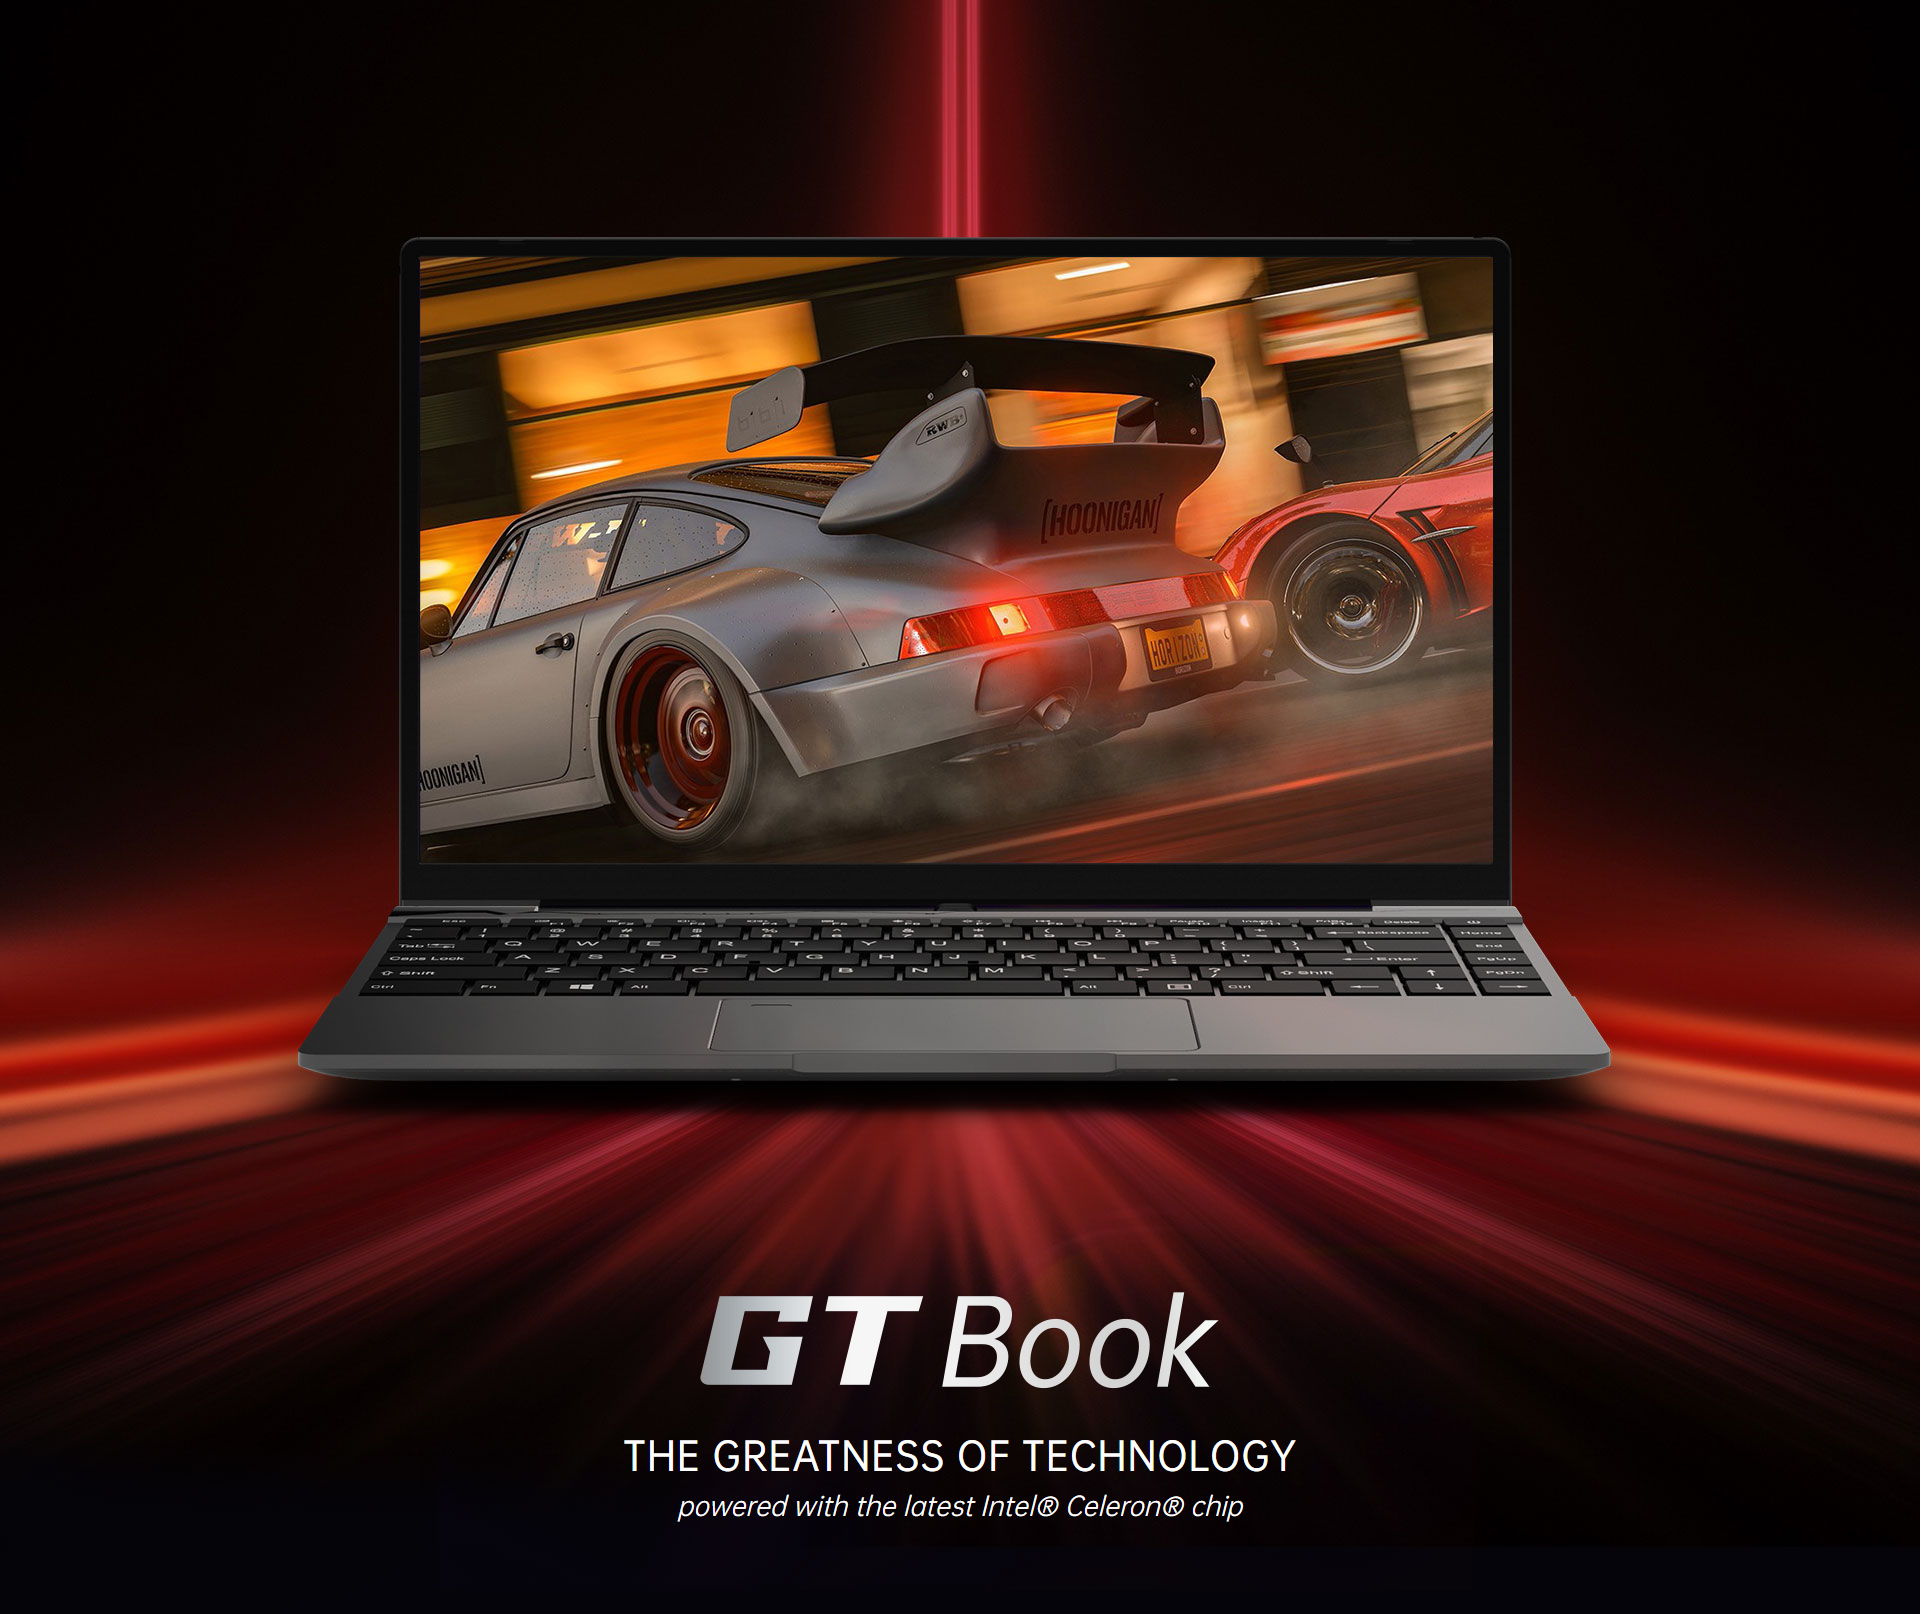 รูปภาพเพิ่มเติมเกี่ยวกับ Alldocube GT Book 14 inch Intel N5100 Quad Core WiFi6 12GB RAM 256GB SSD 1920×1080 IPS Notebook laptop computer Blth 5.1